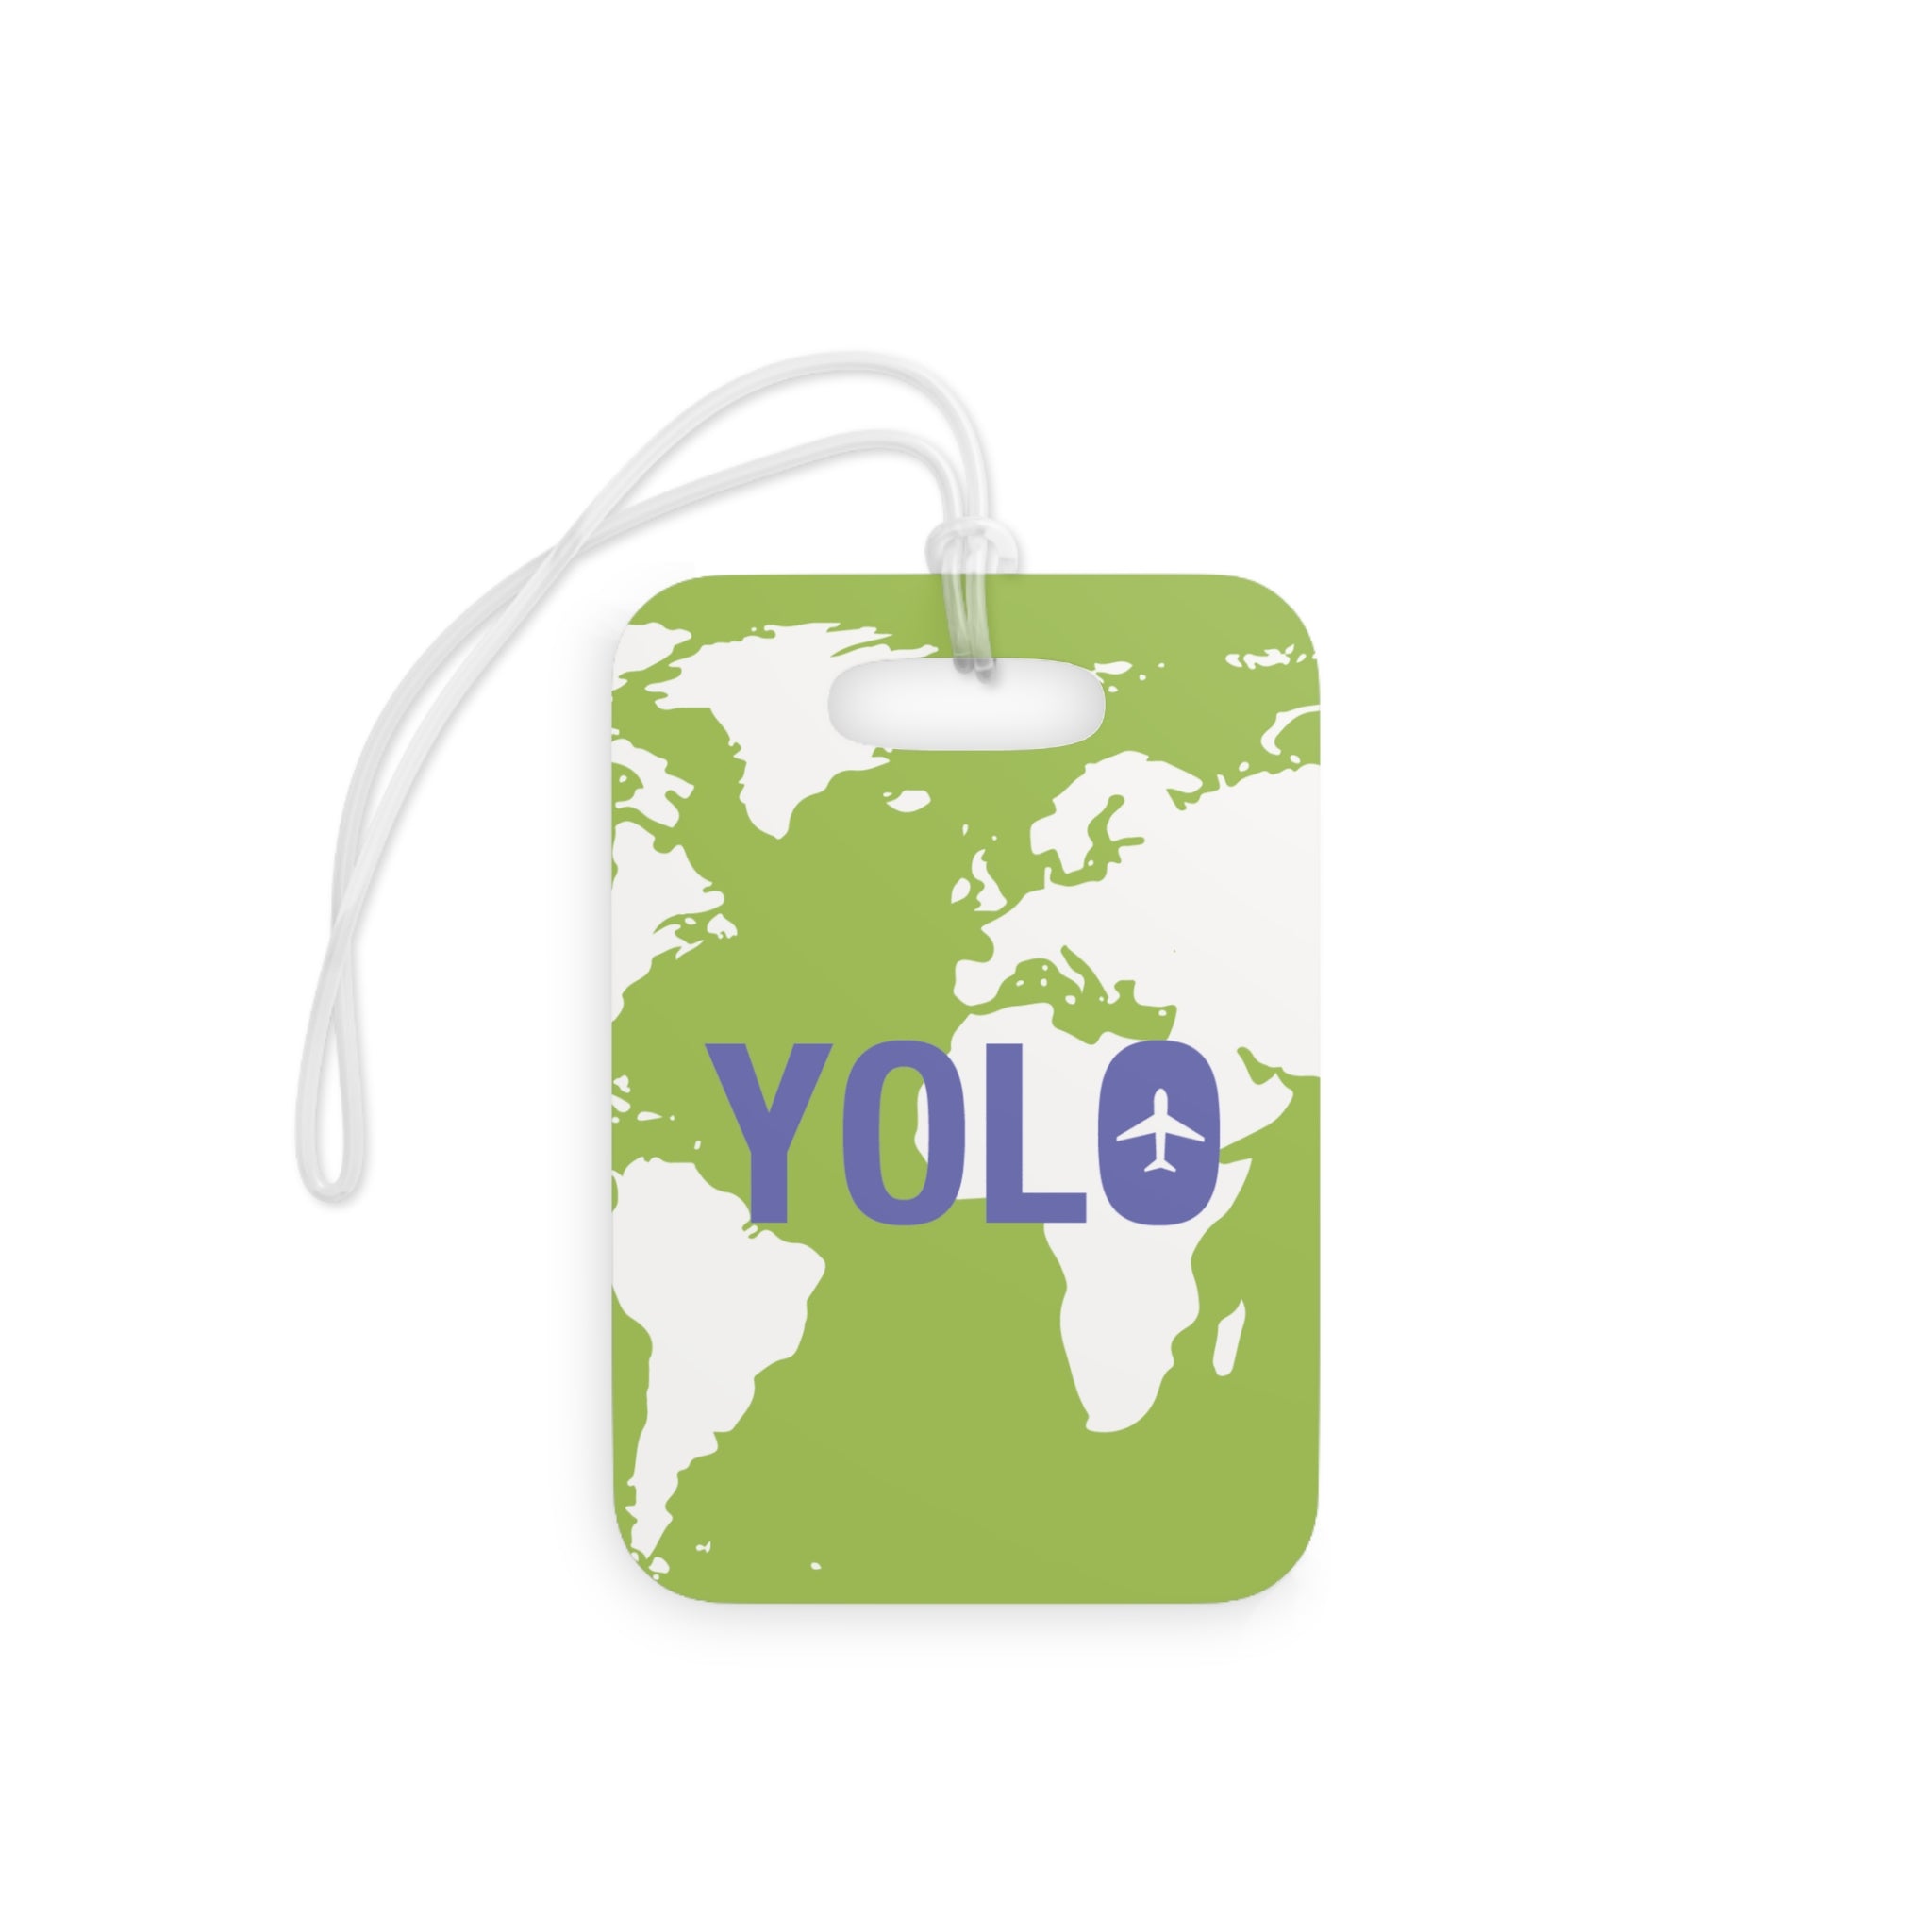 Yolo Luggage Tag (Green)